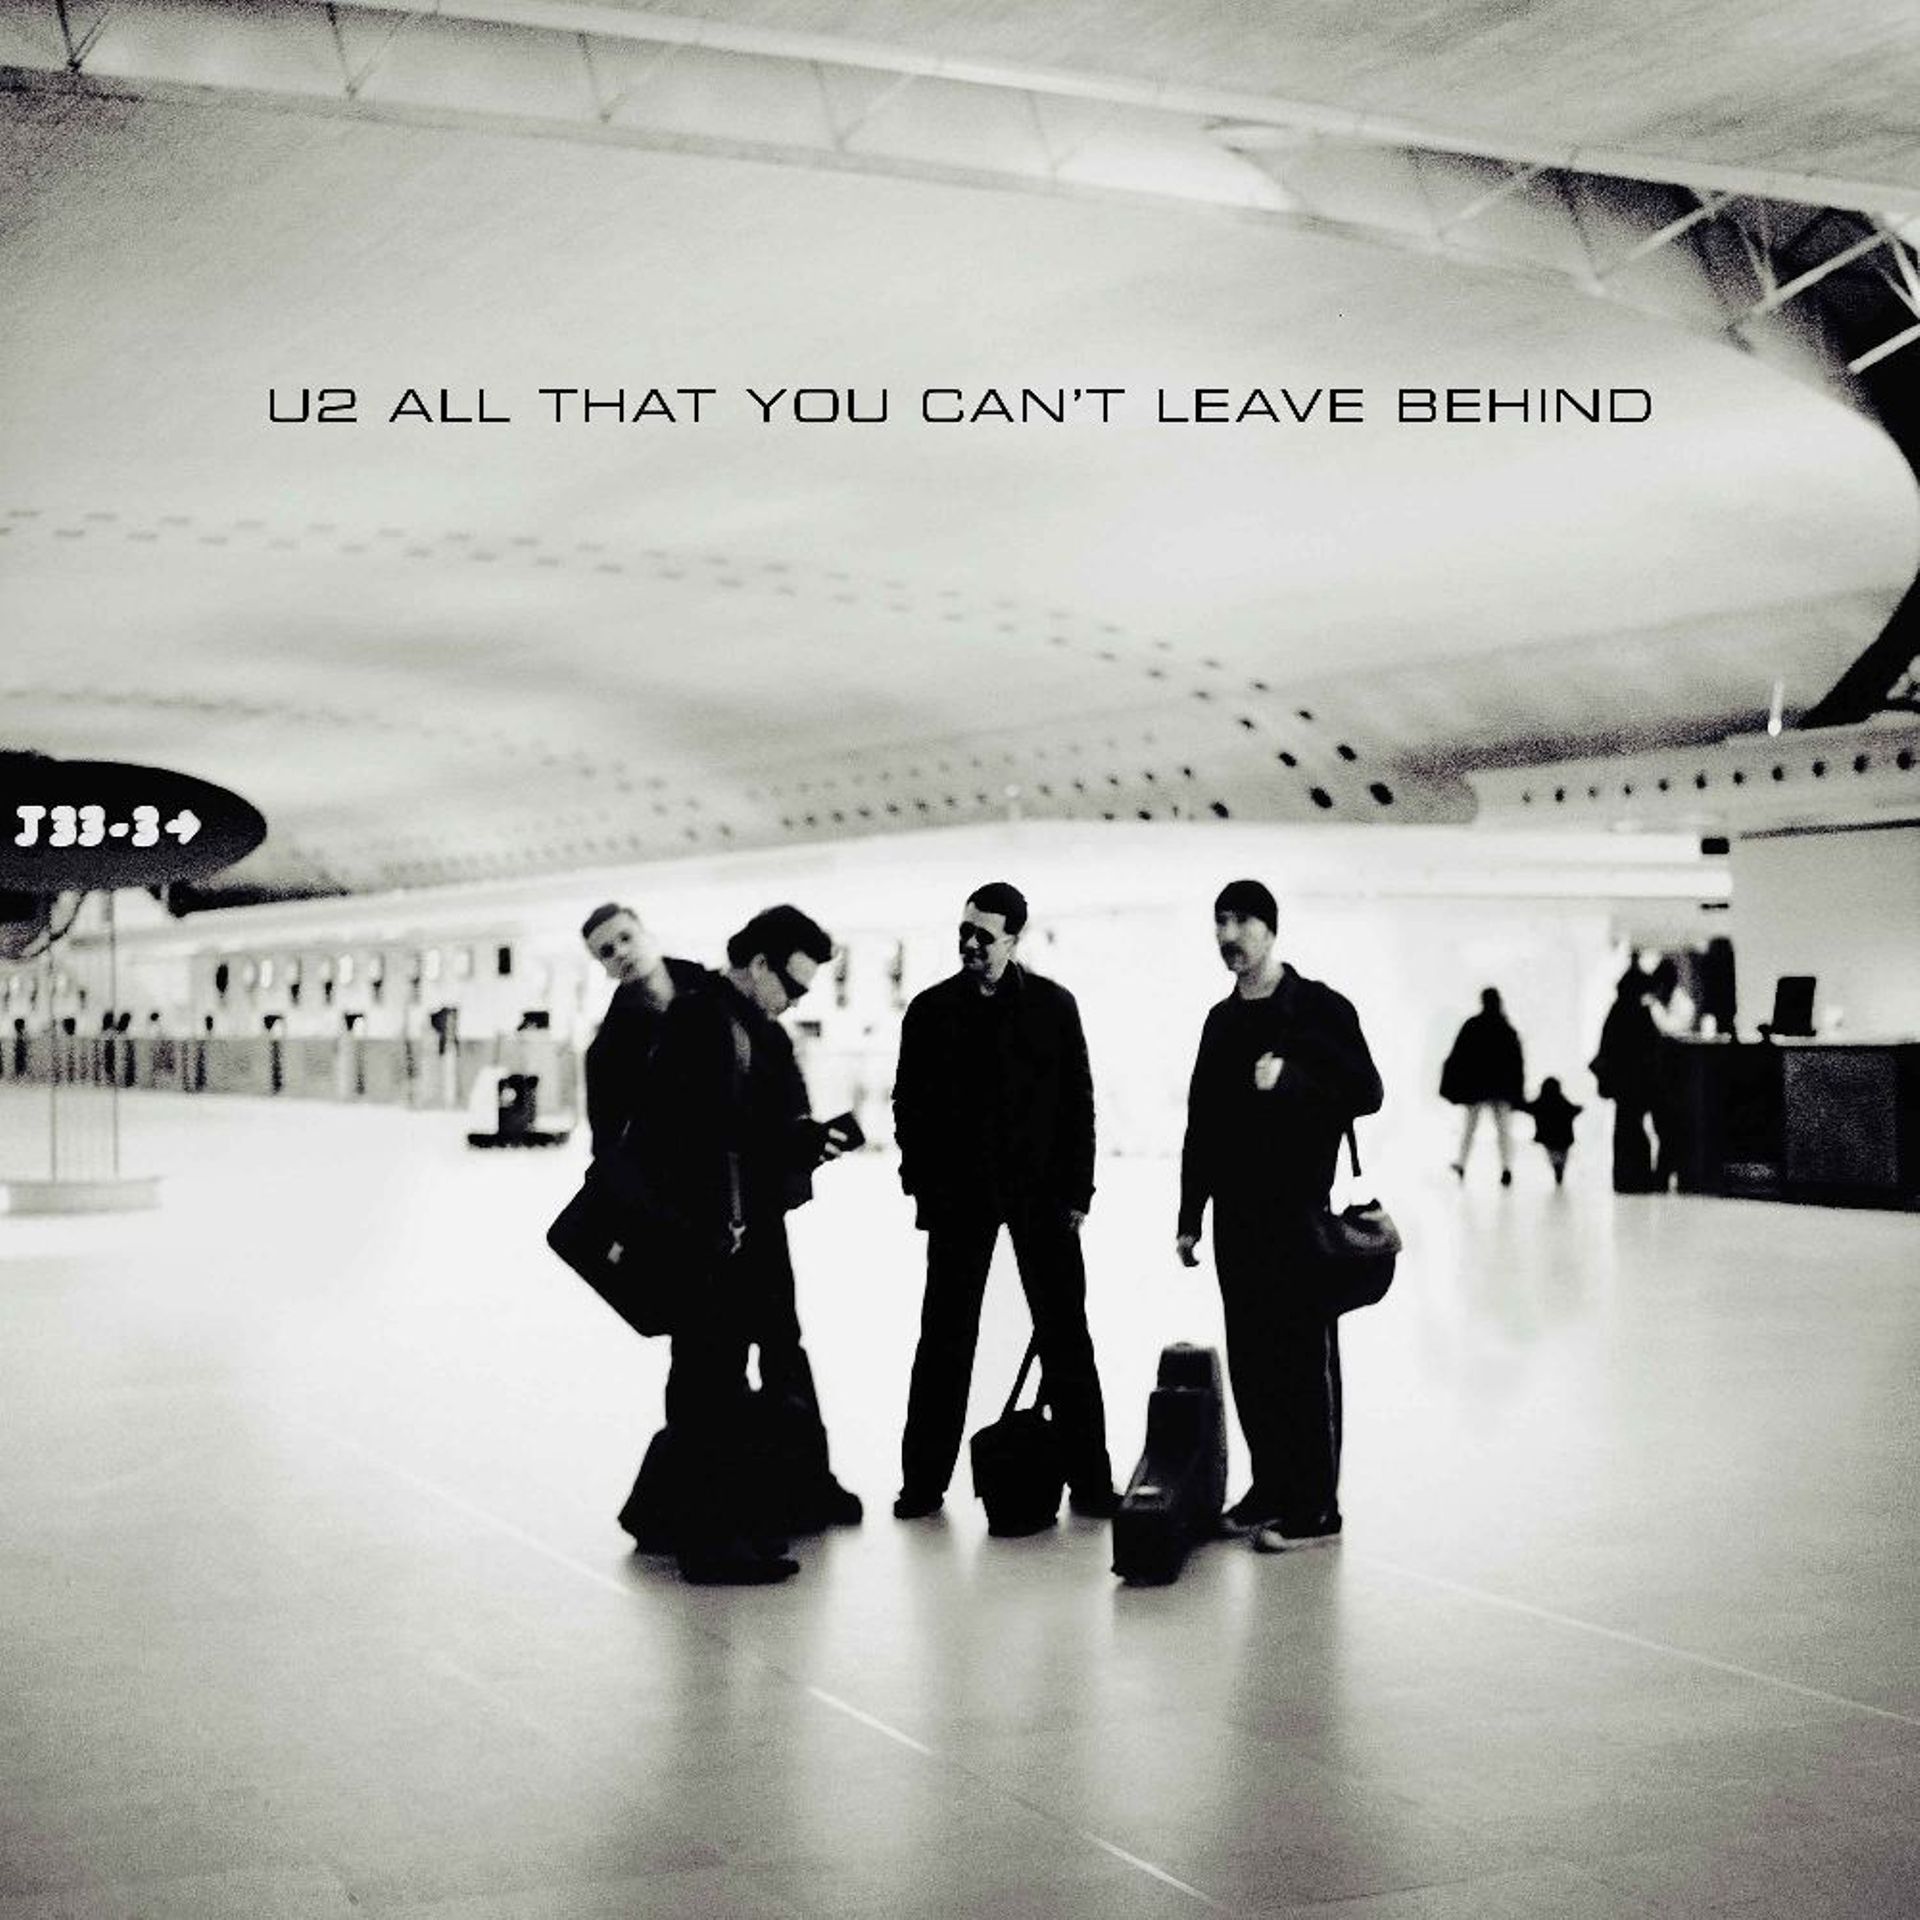 U2 sort une réédition de "All That You Can't Leave Behind" pour ses 20 ans